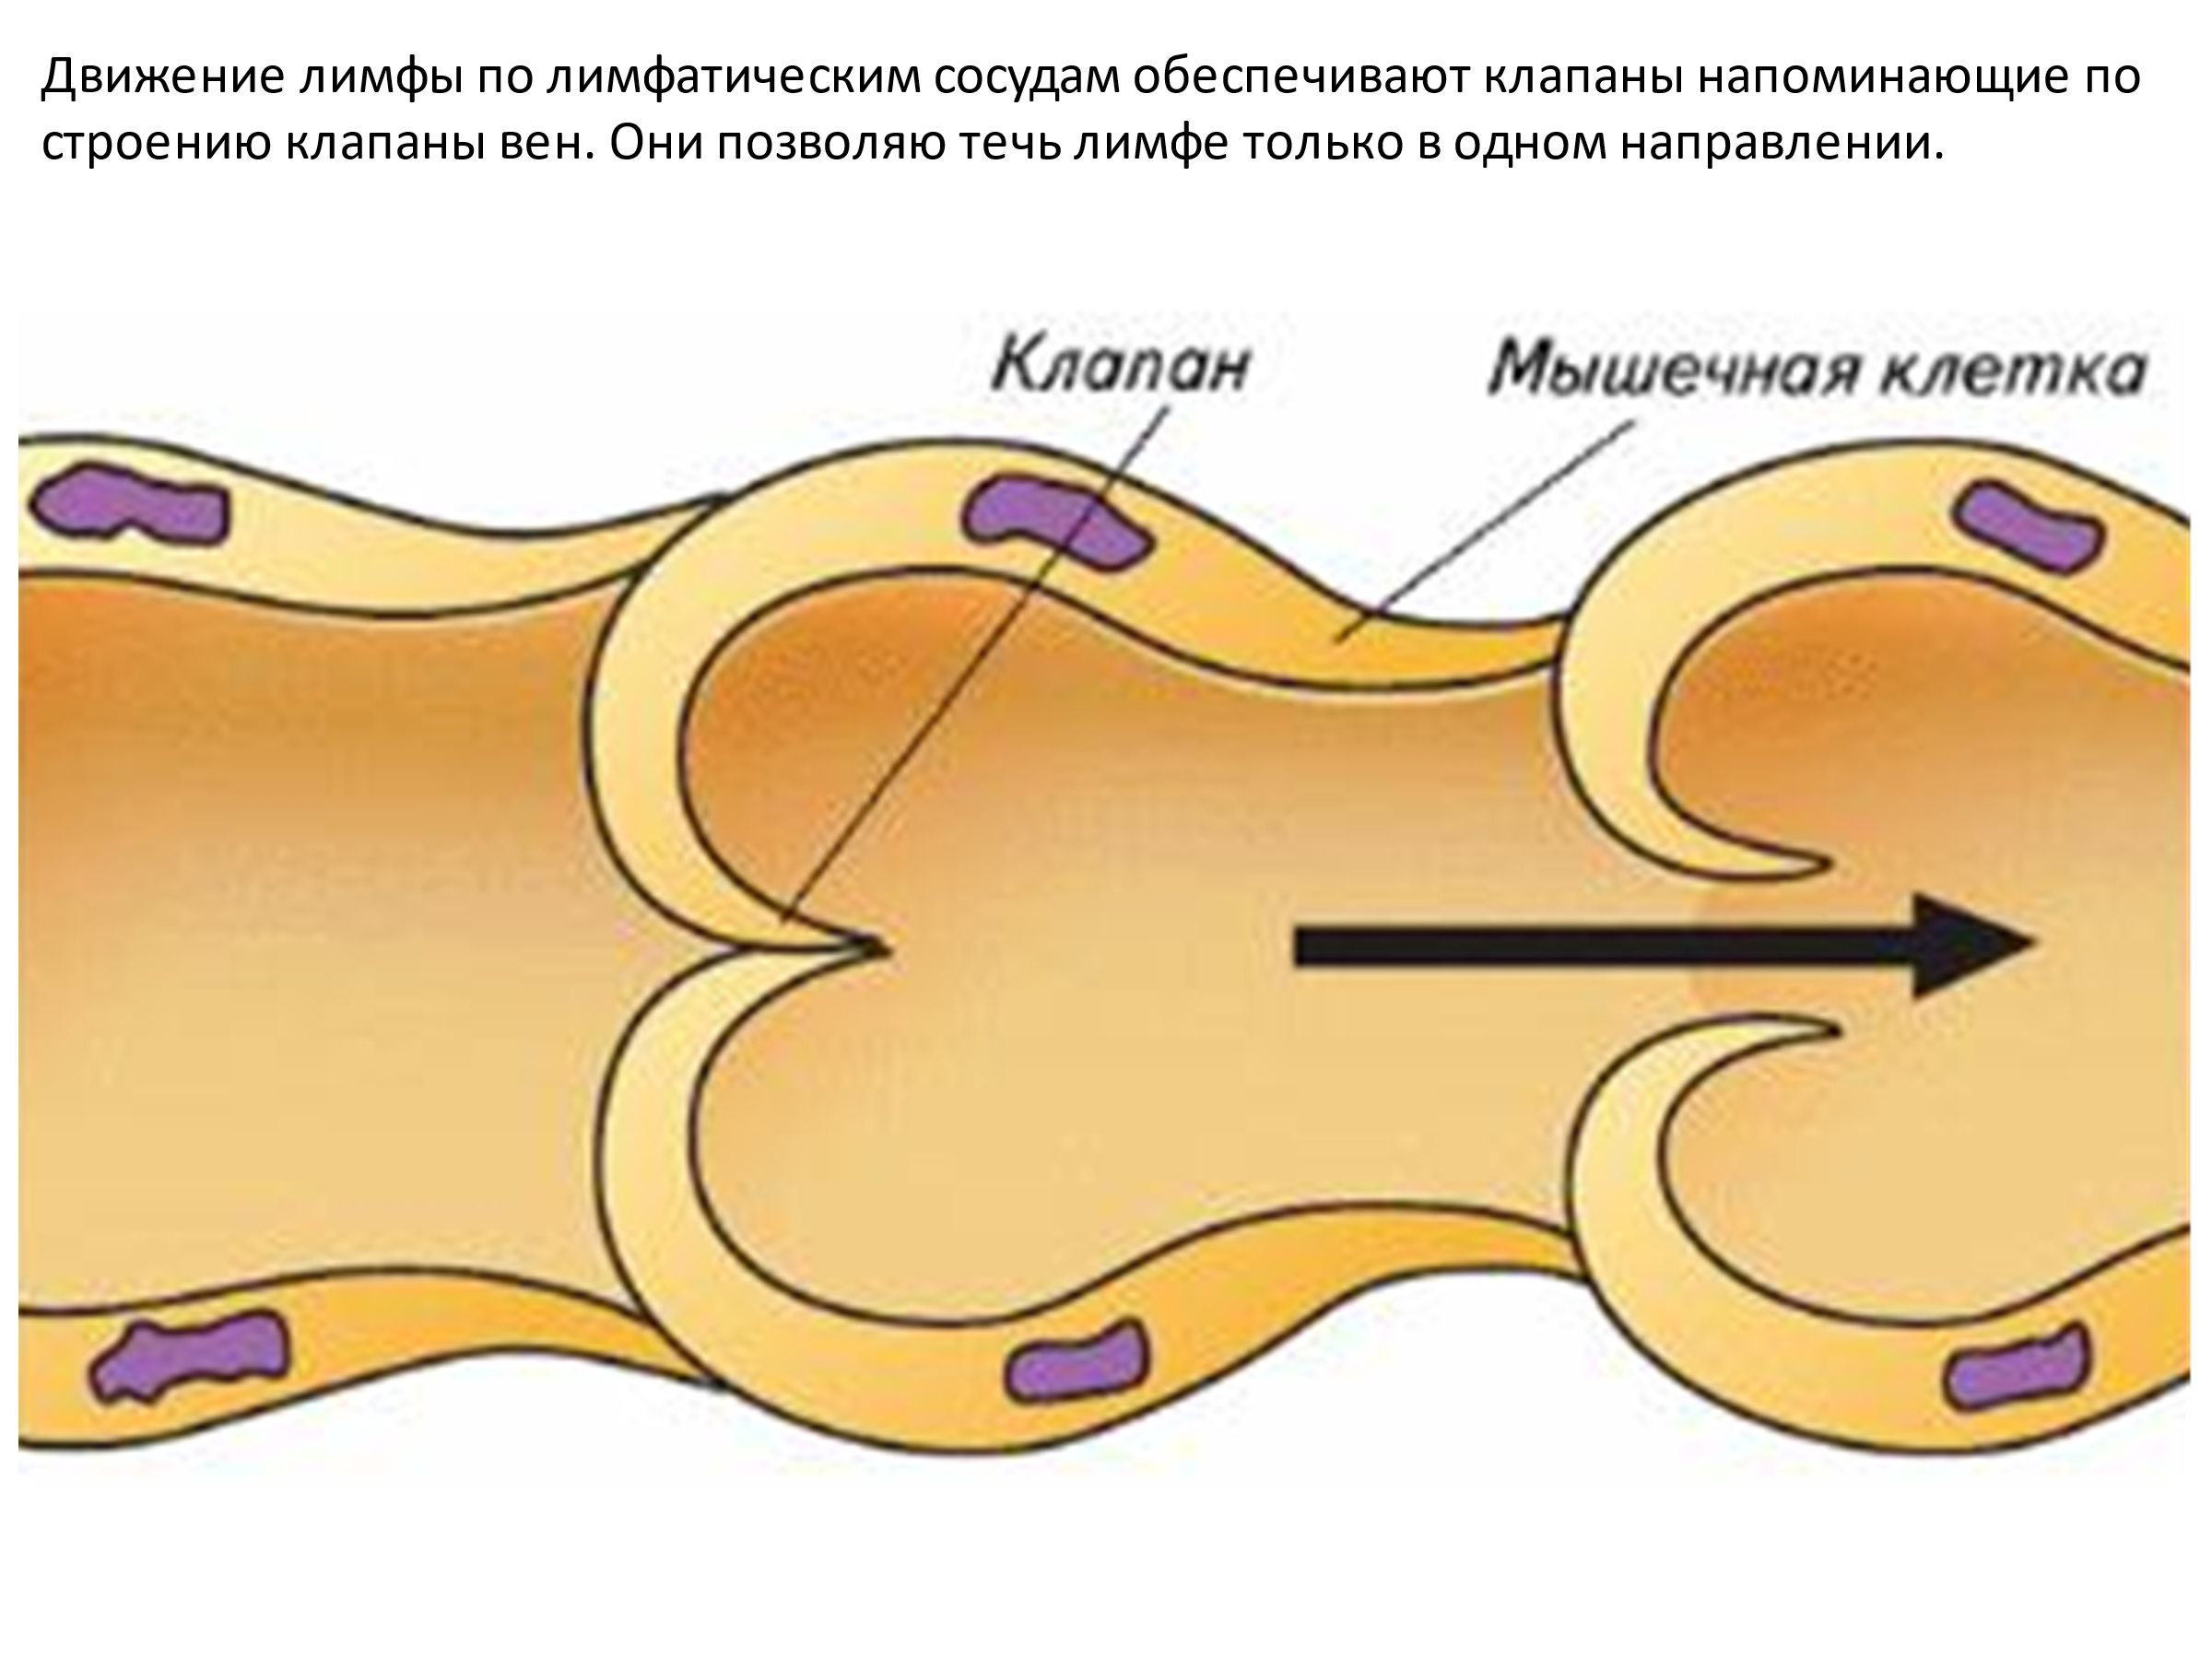 Лимфатический сосуд лимфангион клапаны. Лимфангион анатомия. Строение лимфатических сосудов. Строение лимфатического сосуда анатомия. Движение лимфатических сосудов